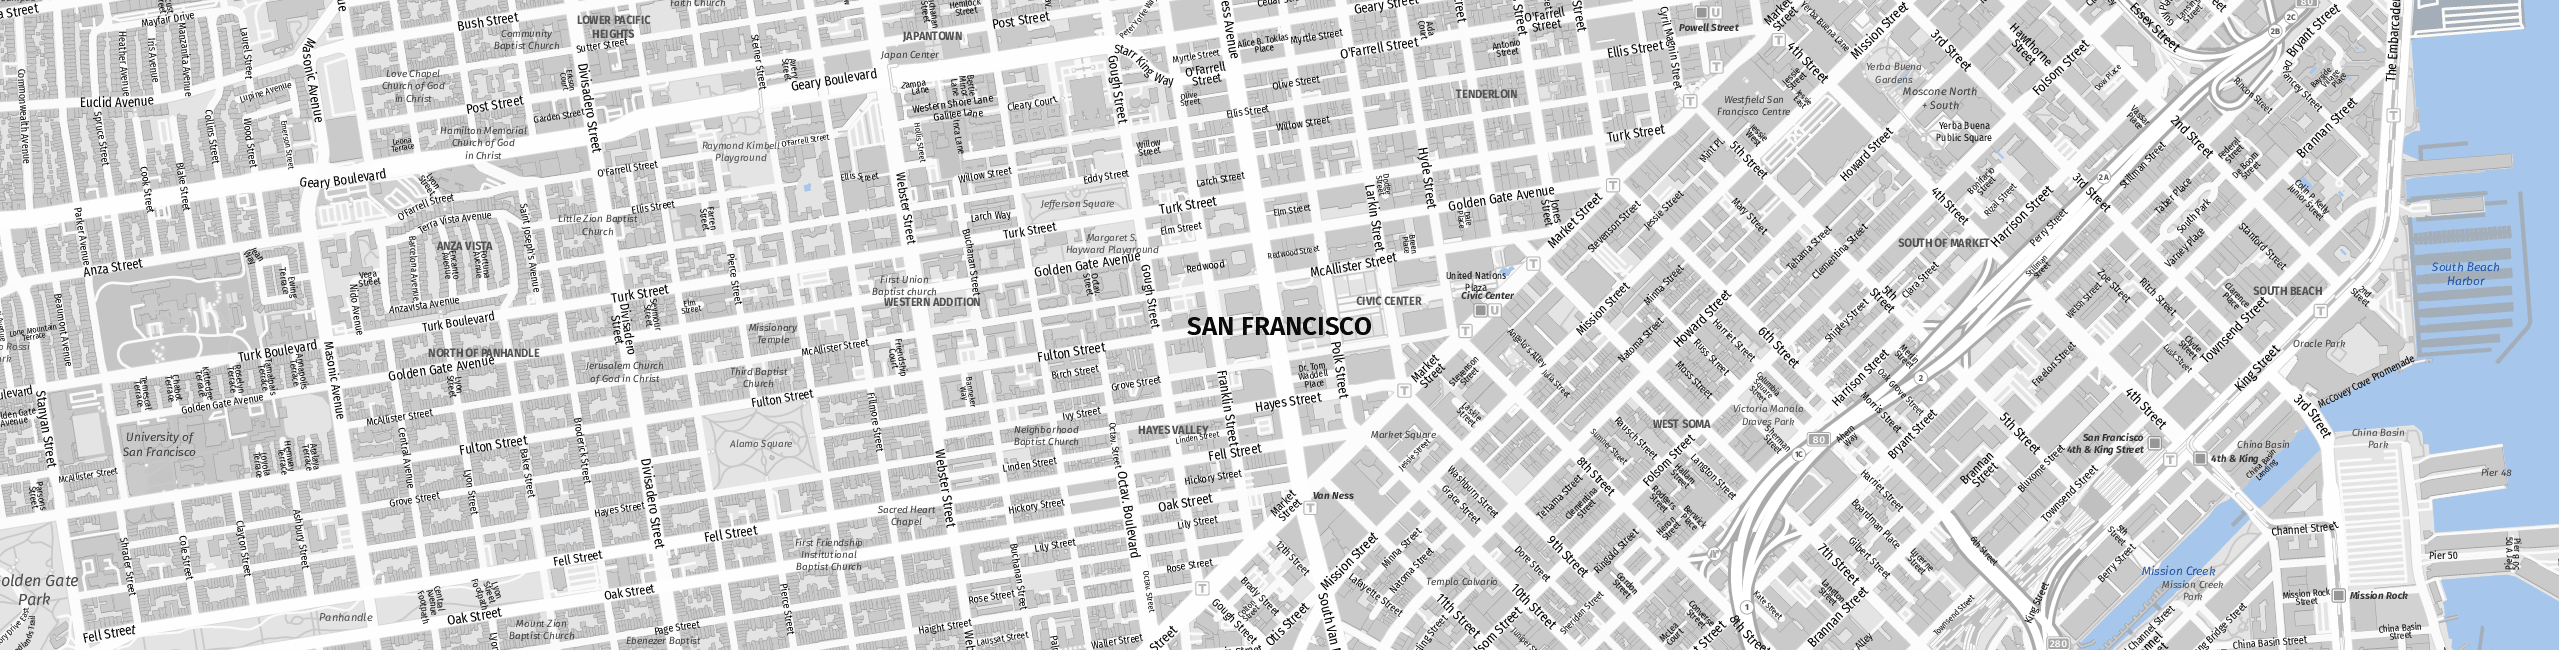 Stadtplan San Francisco zum Downloaden.